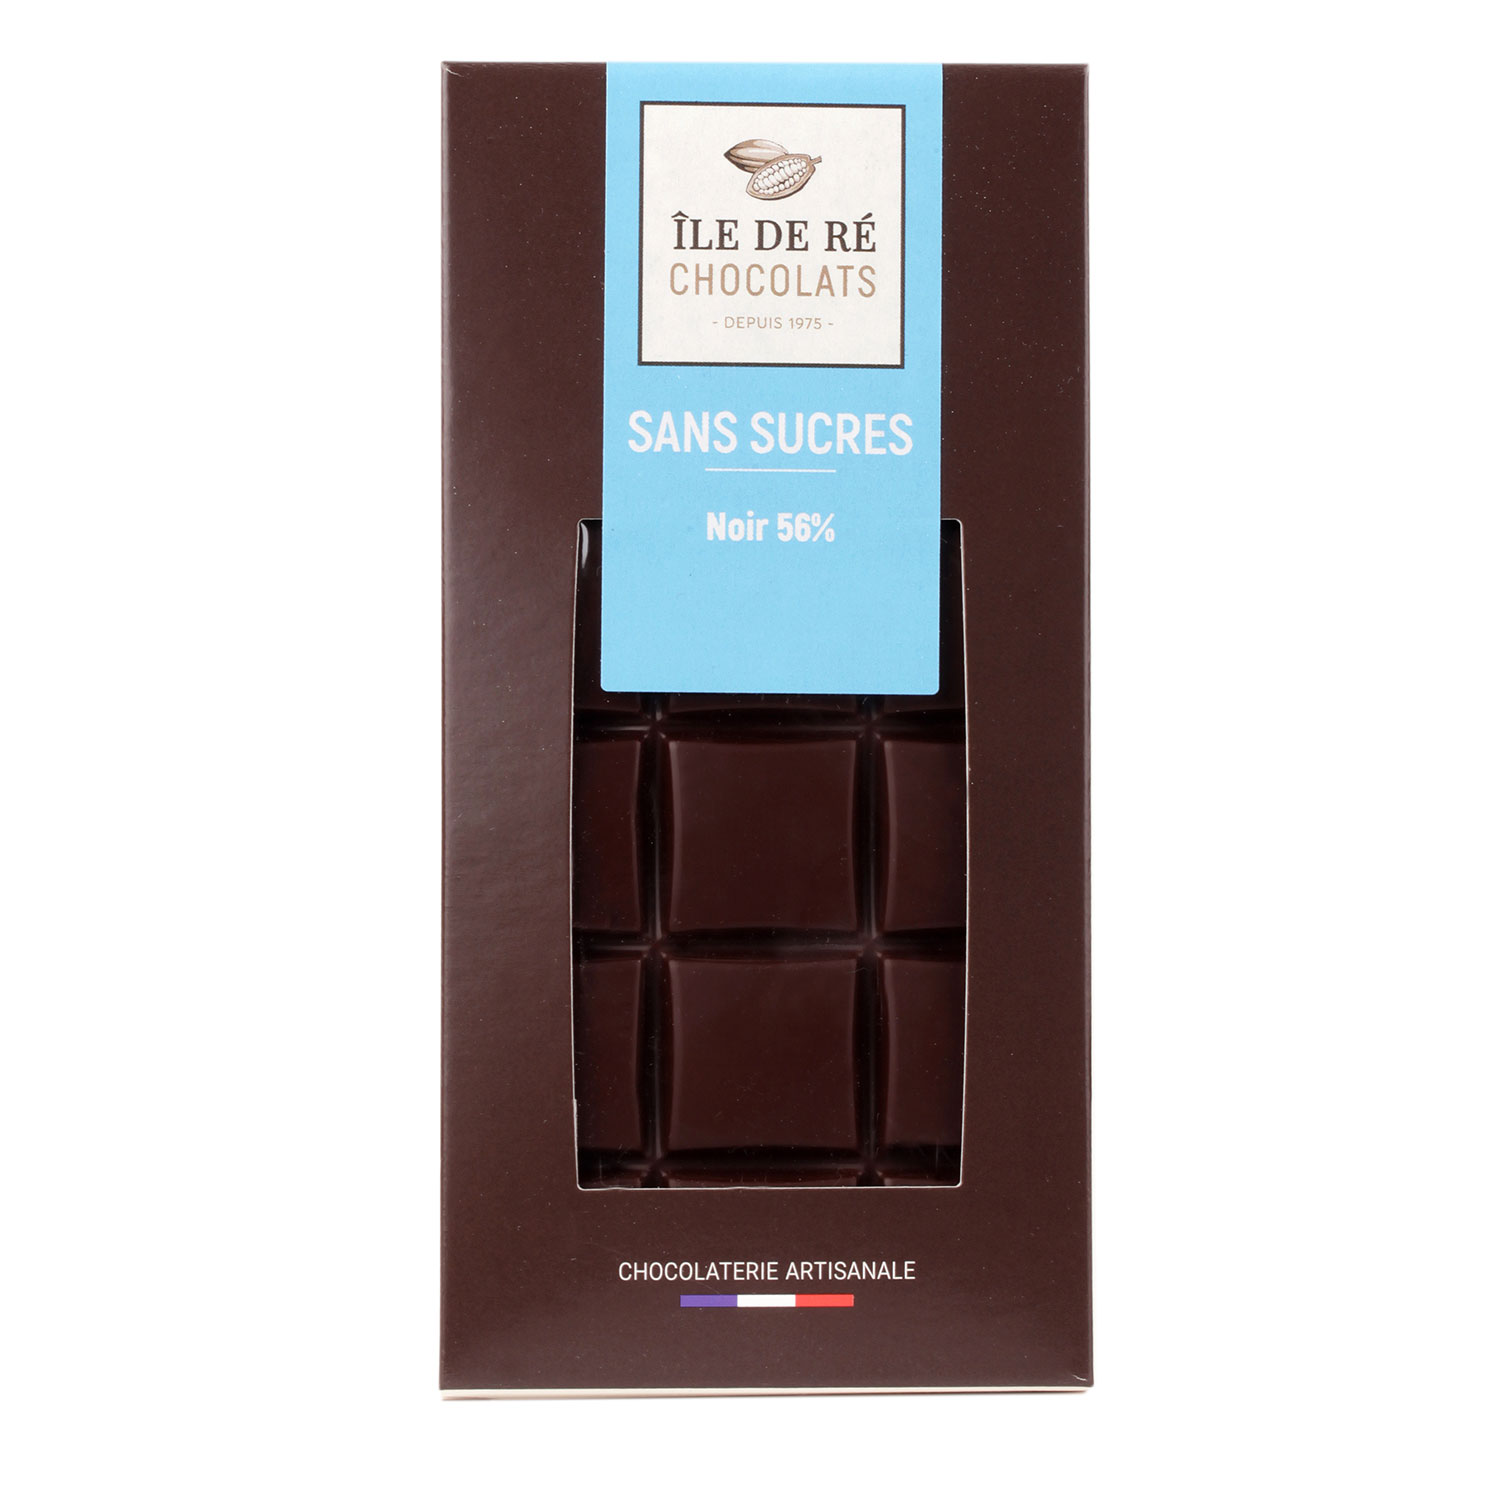 Tablette chocolat noir sans sucre ajouté 65% cacao